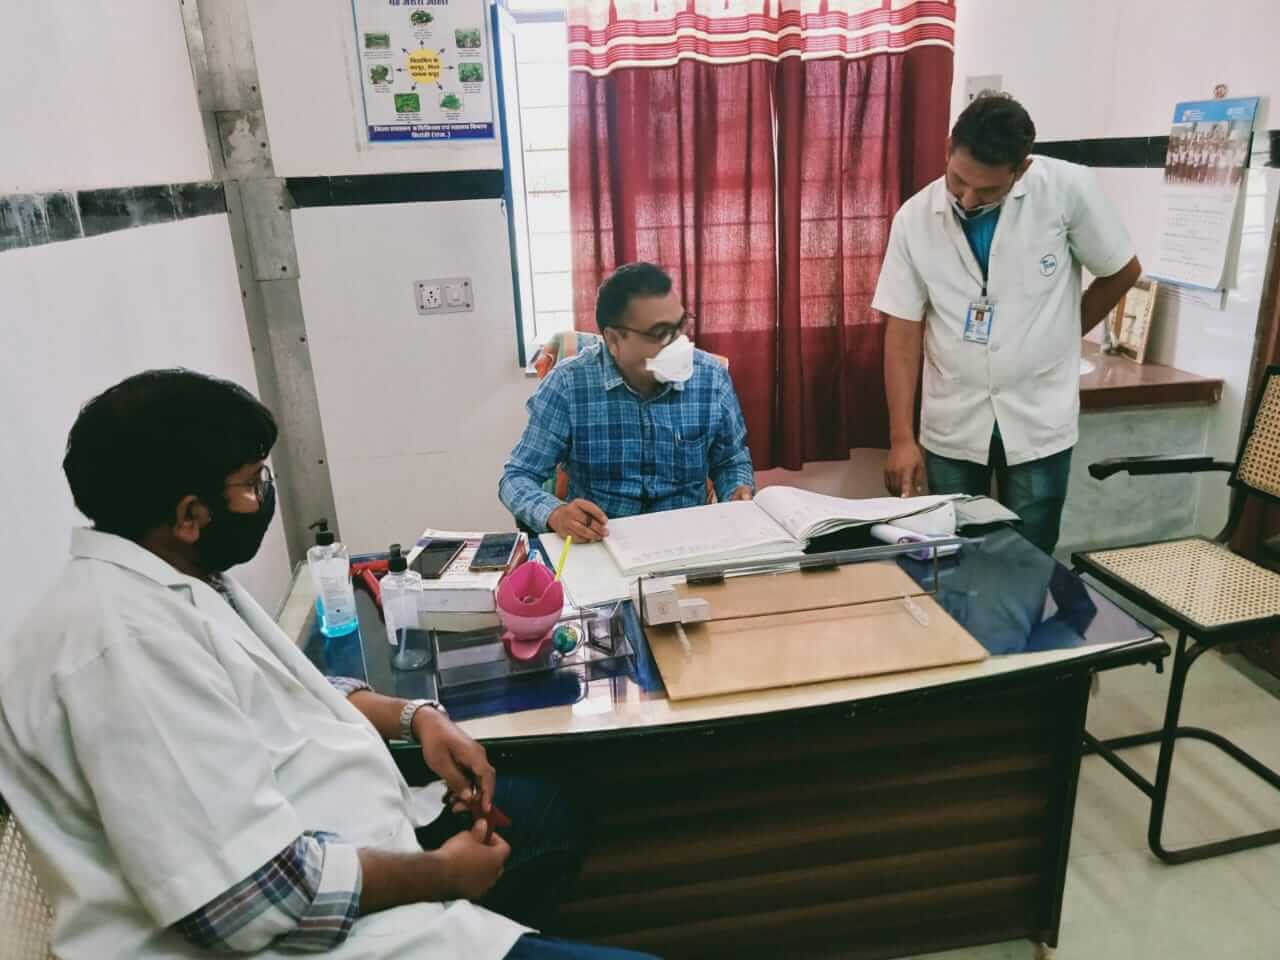 ग्रामीण क्षेत्र की जनता को मुख्यमंत्री निशुल्क दवा व जाँच योजना का लाभ दिलाना, स्वास्थ्य कर्मचारियों का पहला काम - सीएमएचओ